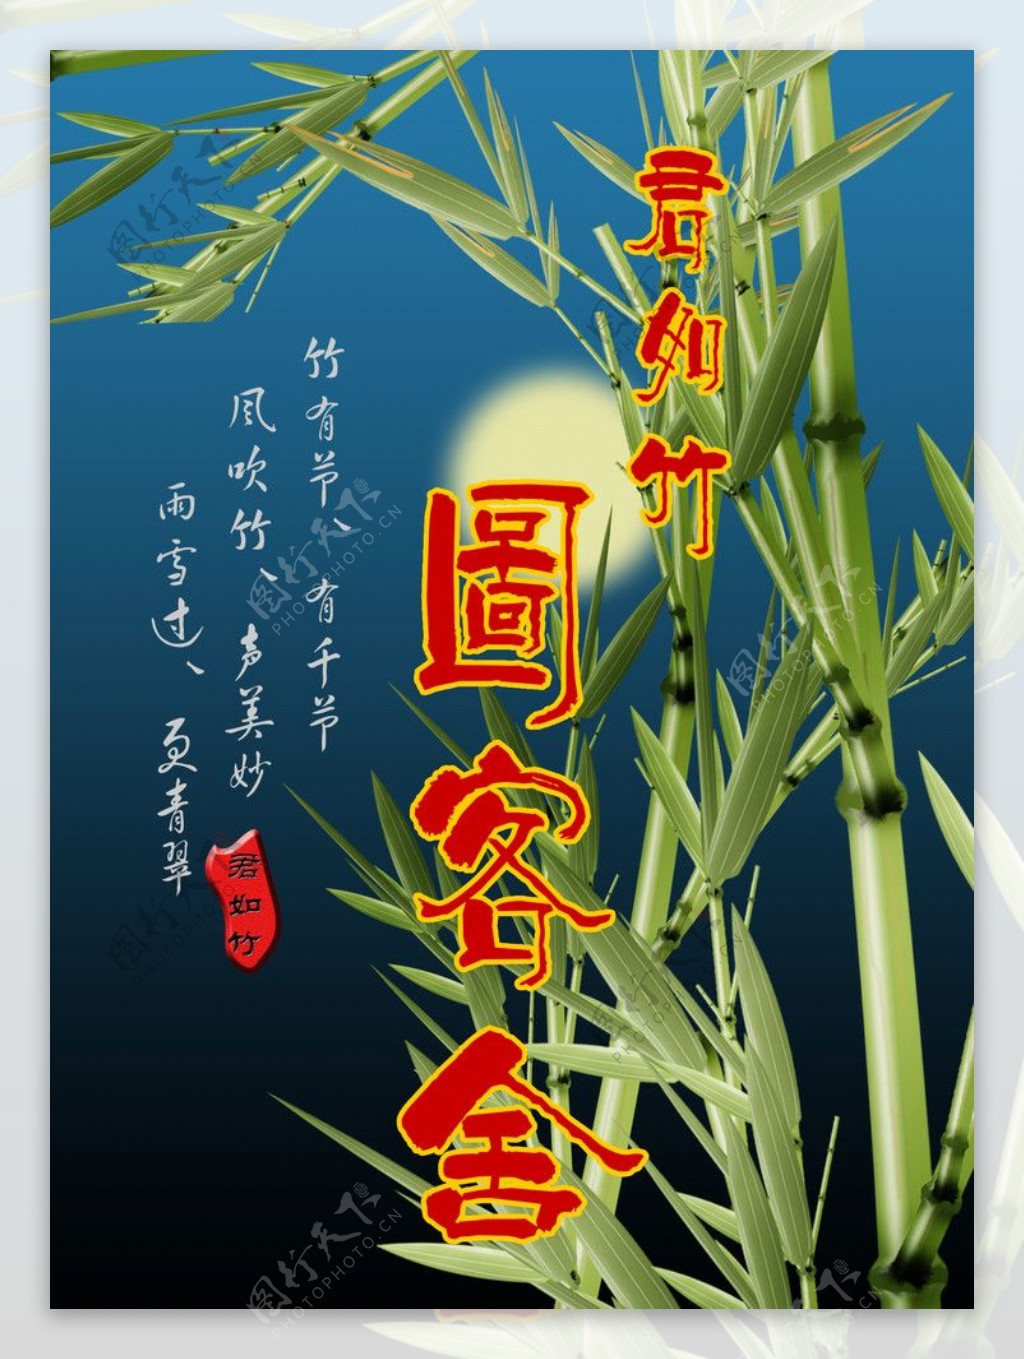 月下竹子图广告素材图片